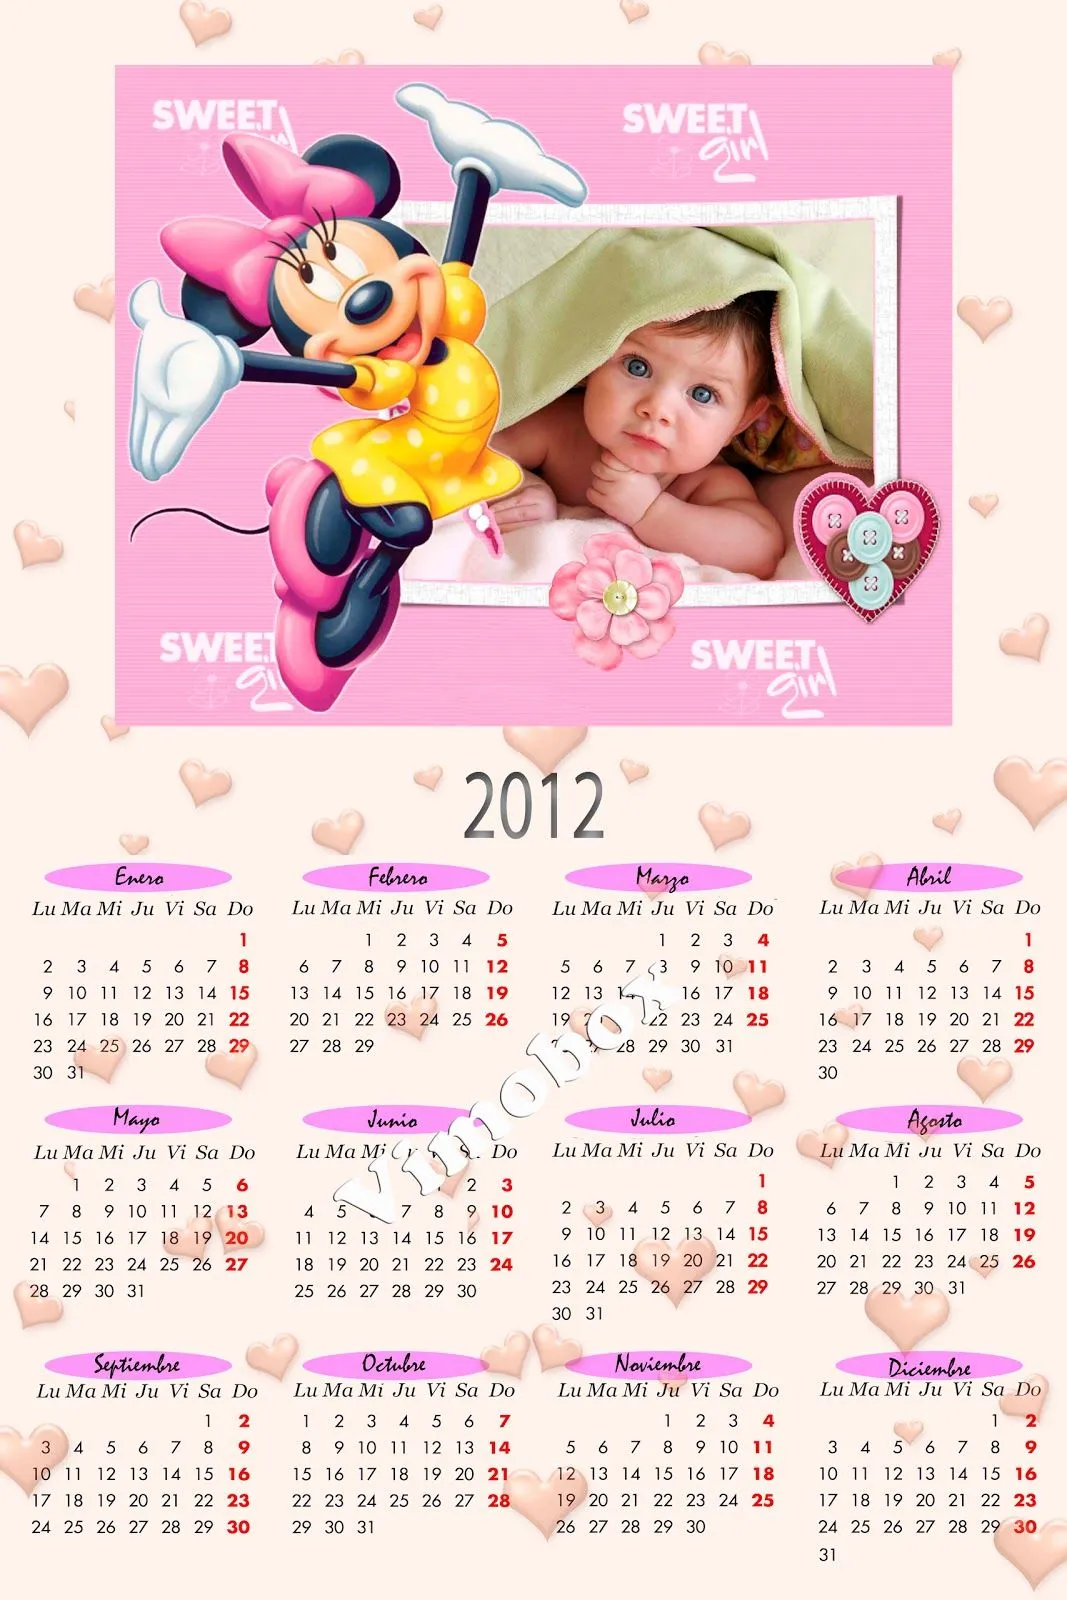  ... 2012 de Minnie, Mickey y Winnie the Pooh en formato psd y png